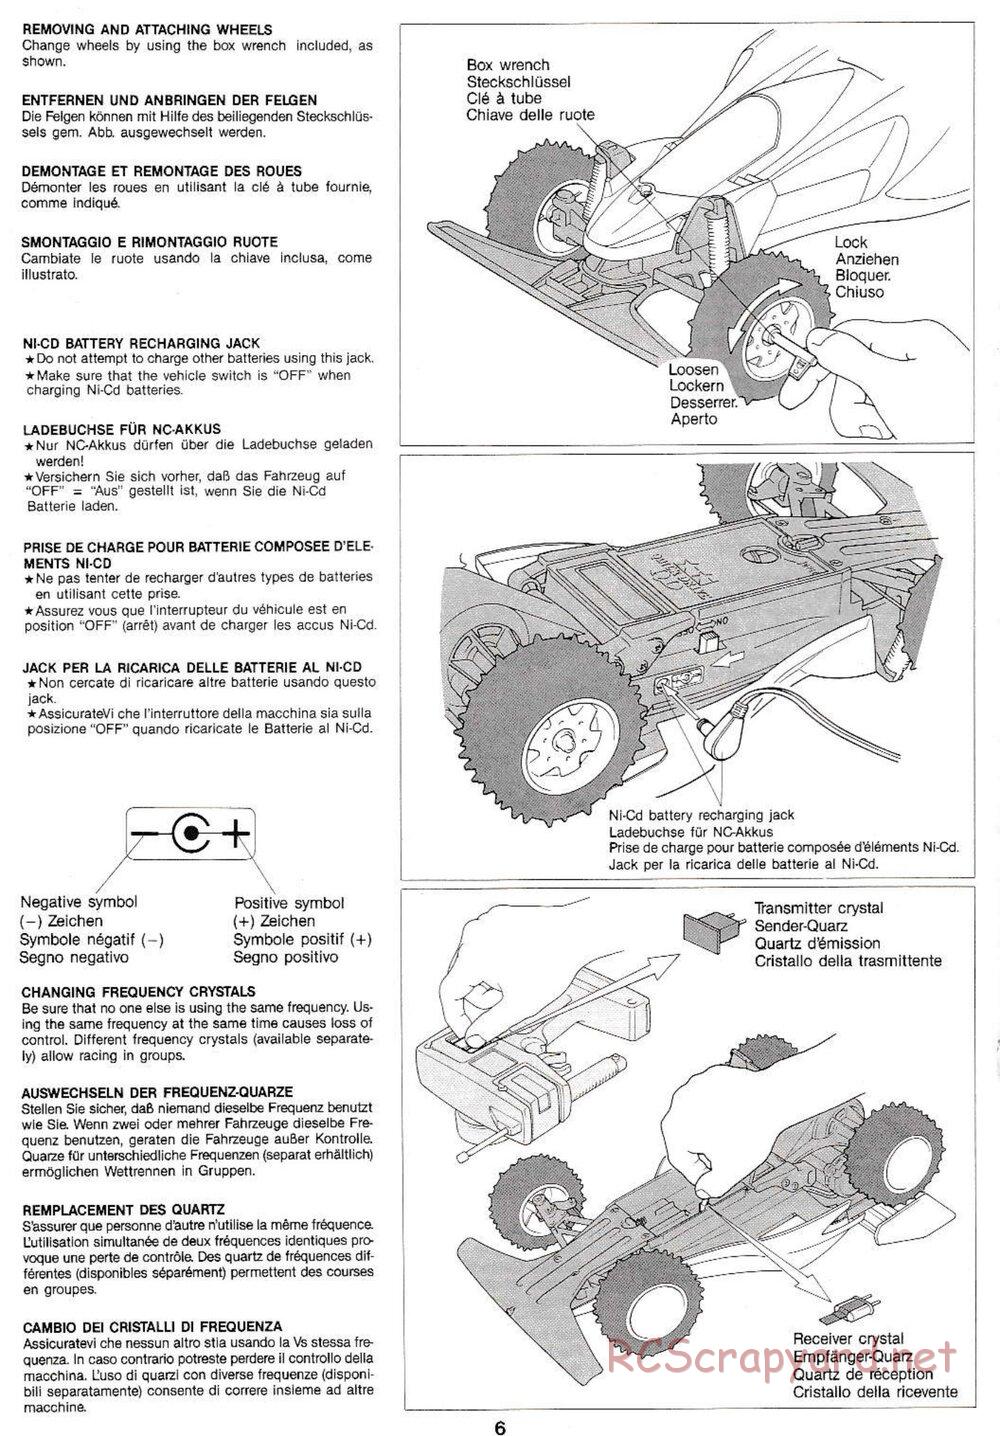 Tamiya - Manta Ray QD Chassis - Manual - Page 6